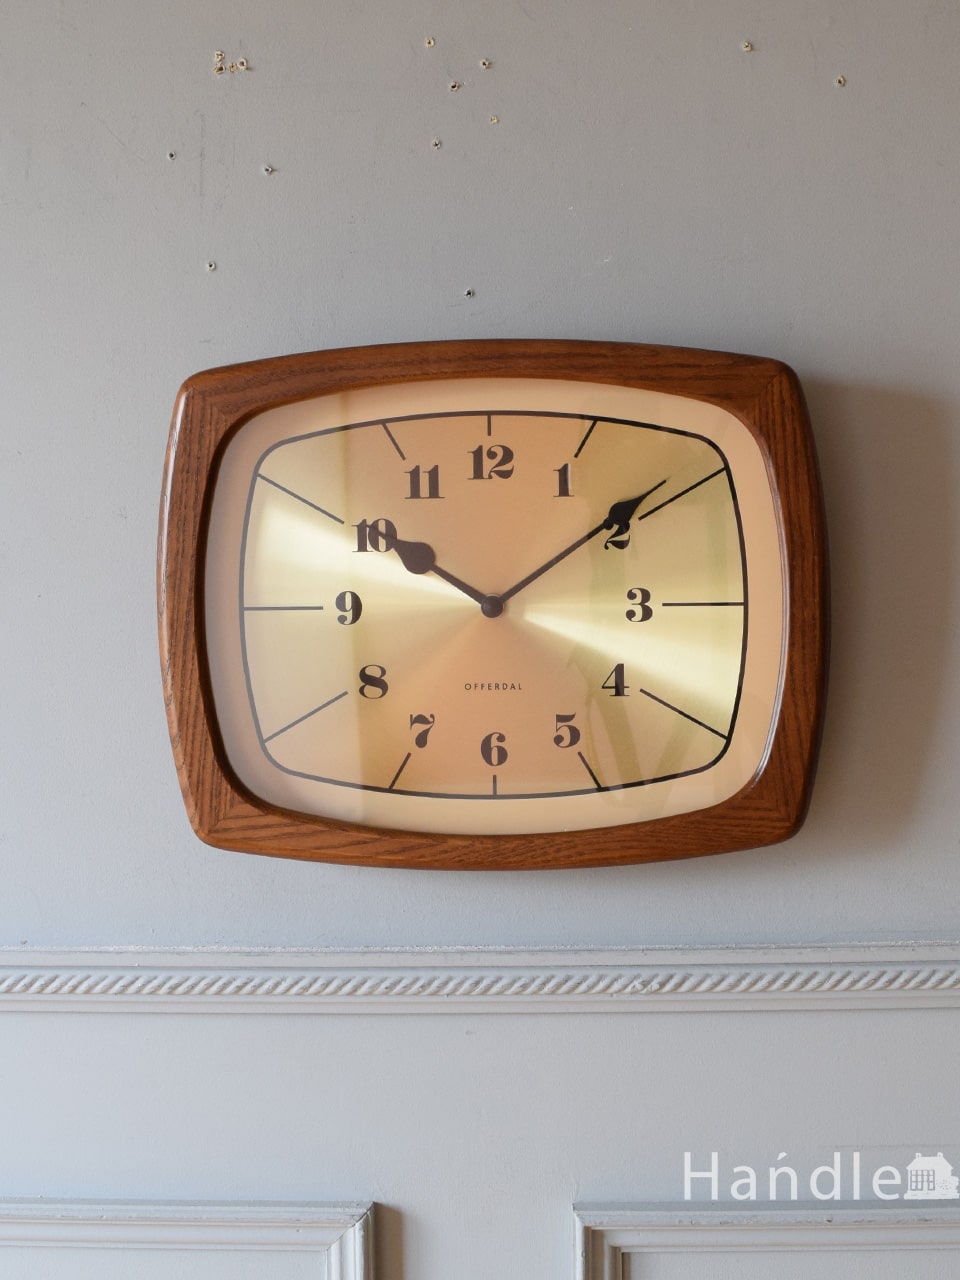 ビンテージ調のおしゃれな壁掛け時計、木製フレームのウォールクロック (n22-024)